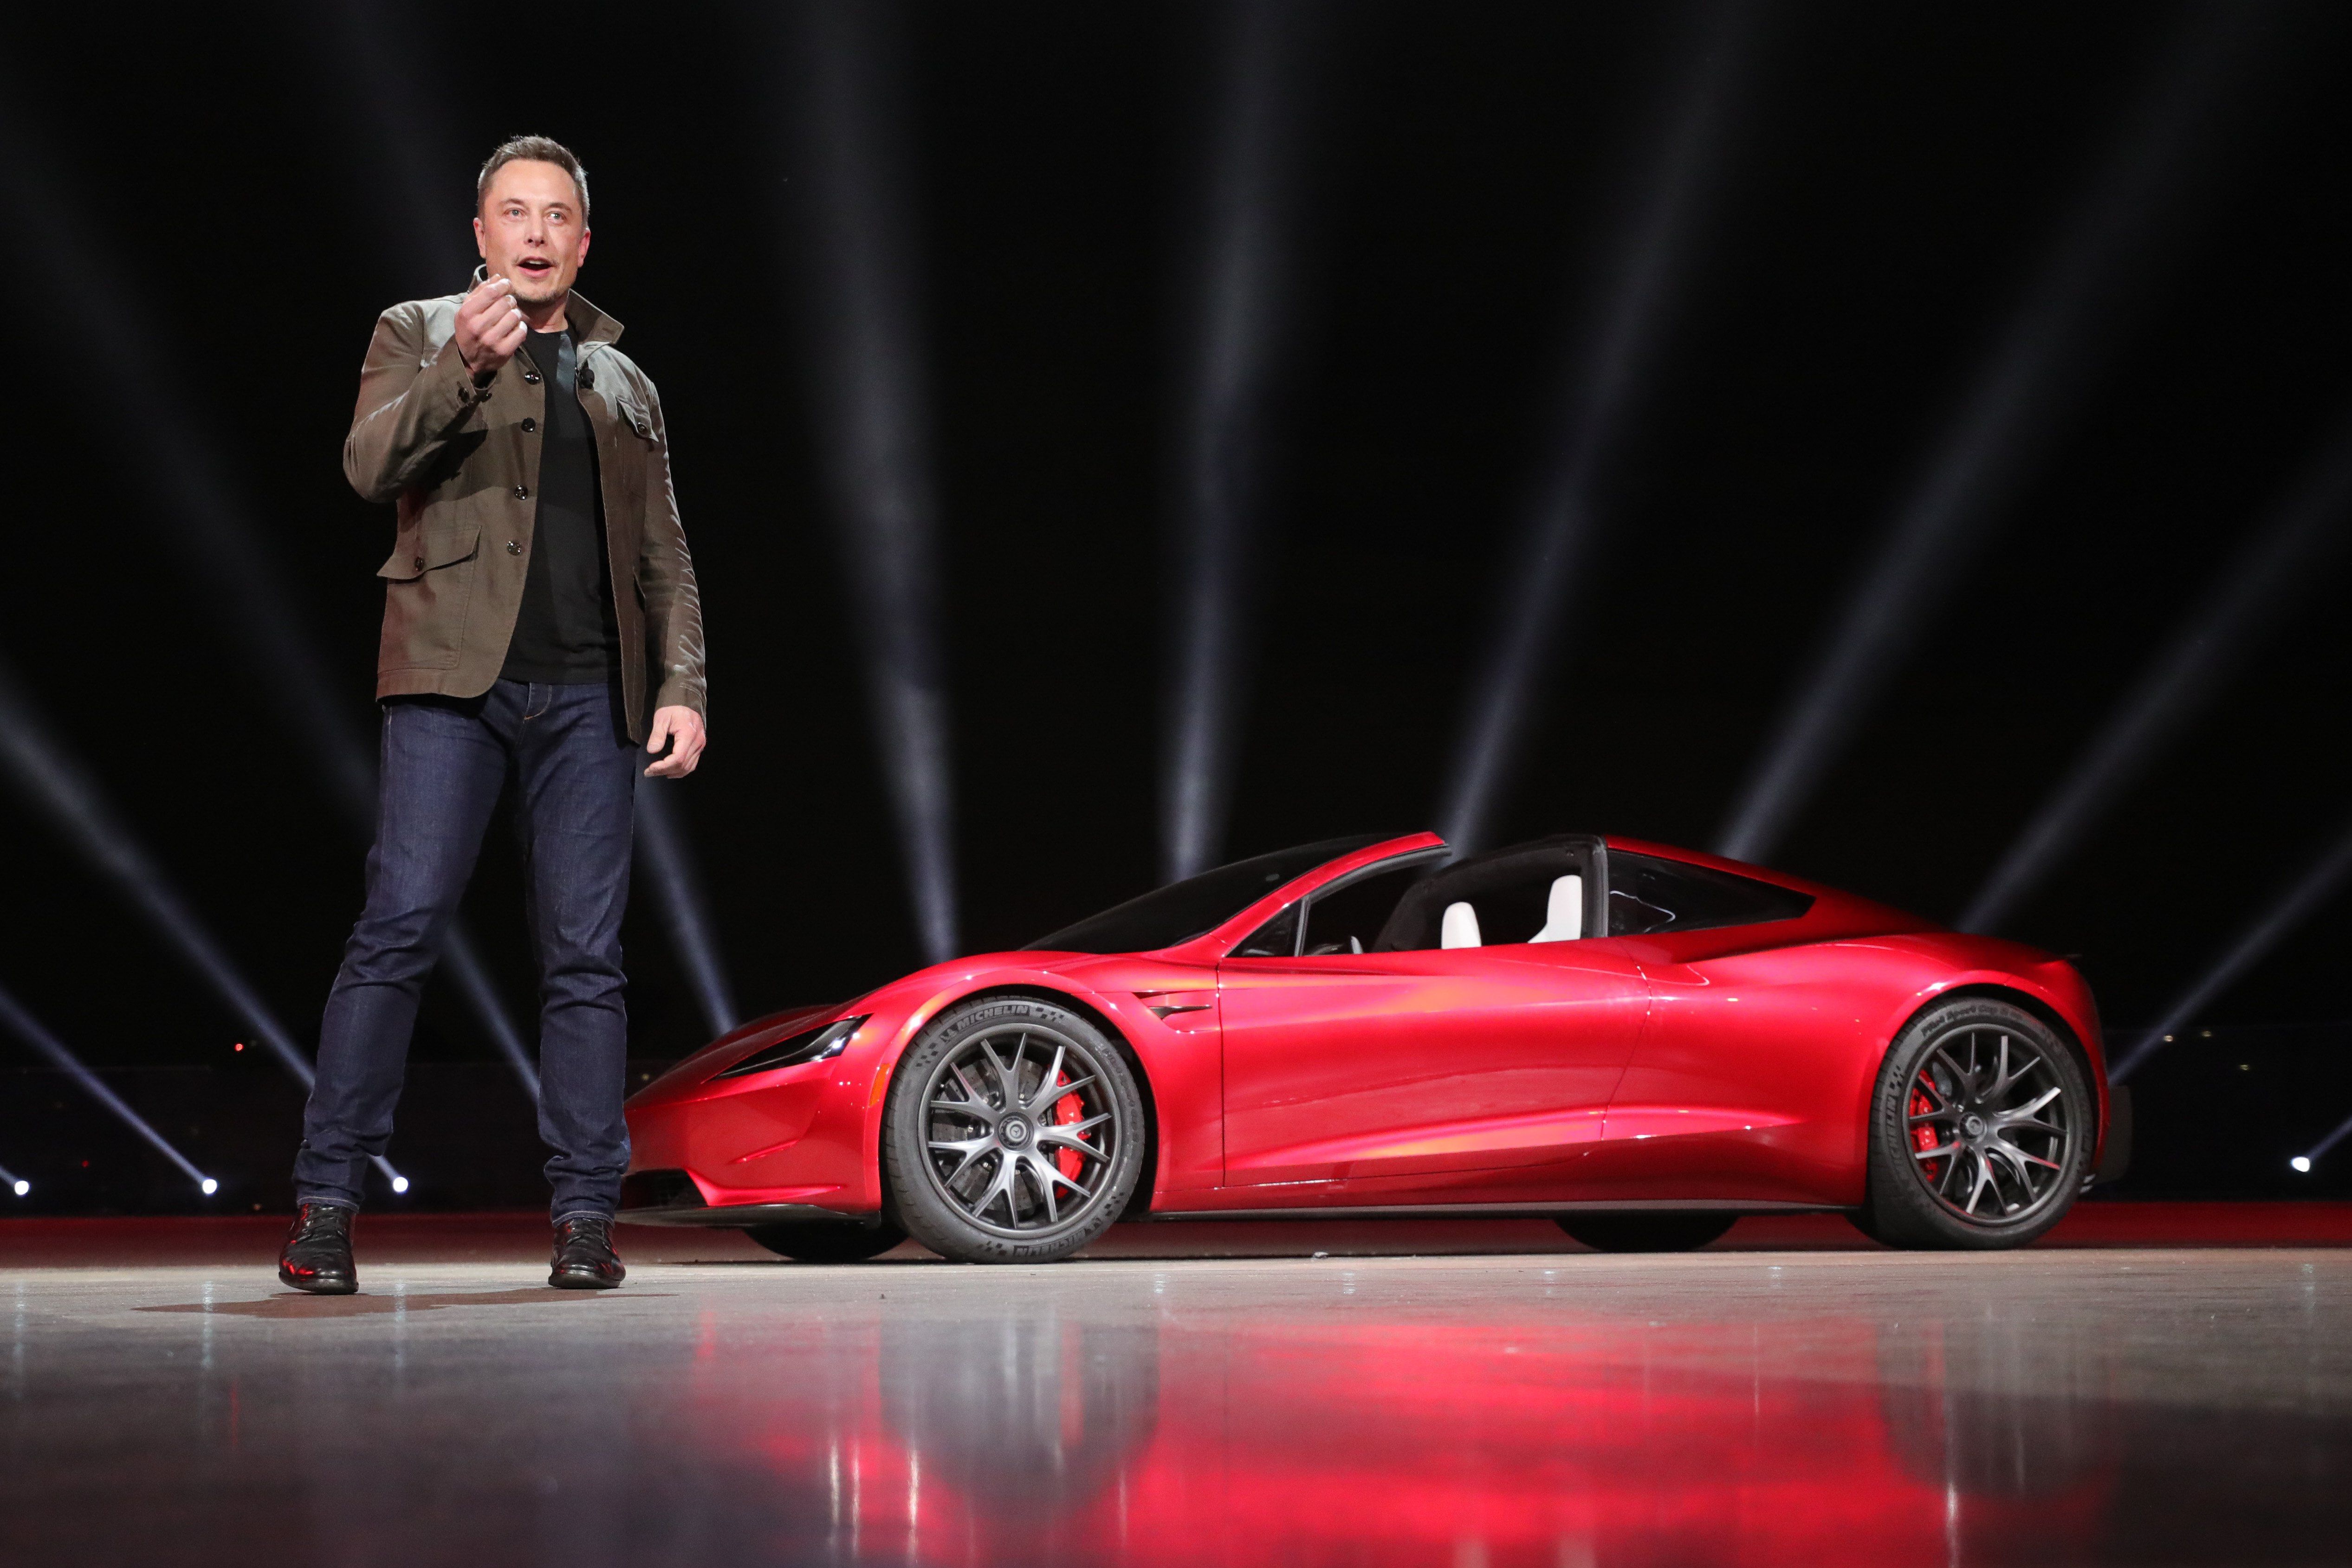 A Tesla alapítója, Elon Musk beszél az új Tesla Roadster előtt 2017. november 16-án, Los Angelesben. EPA/TESLA HANDOUT 